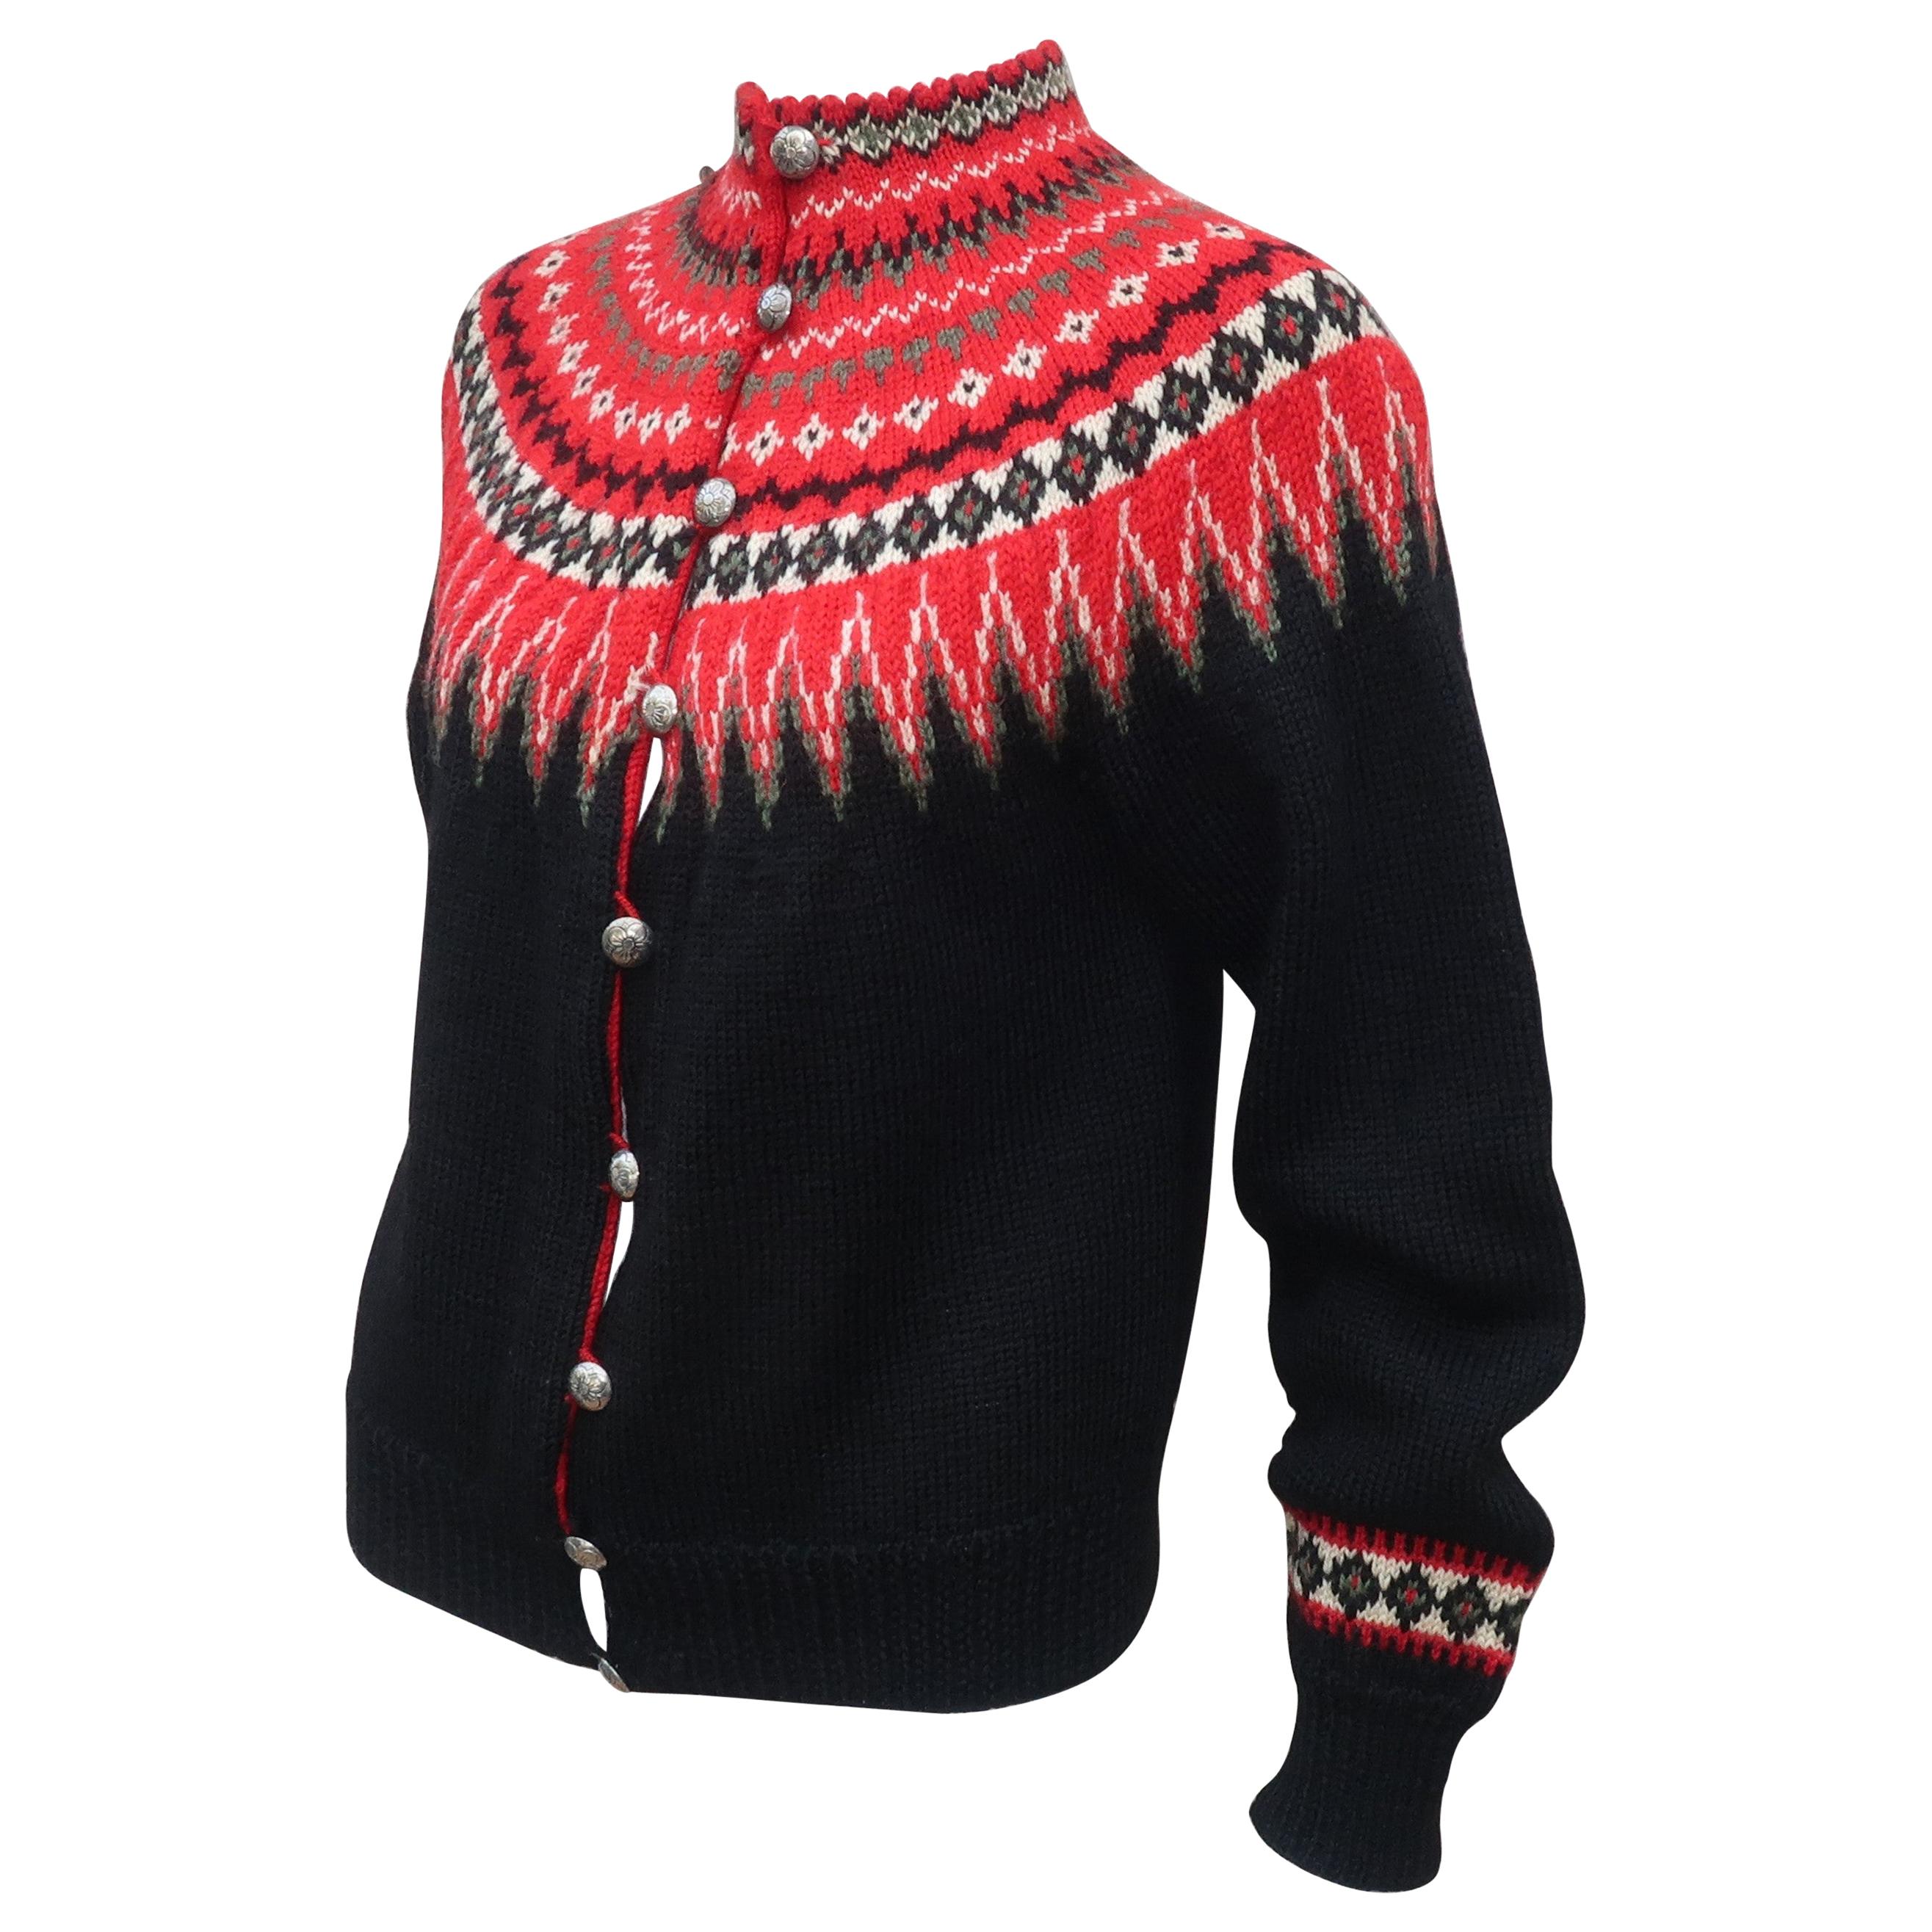 William Schmidt Norwegian Fair Isle Style Sweater, C.1950